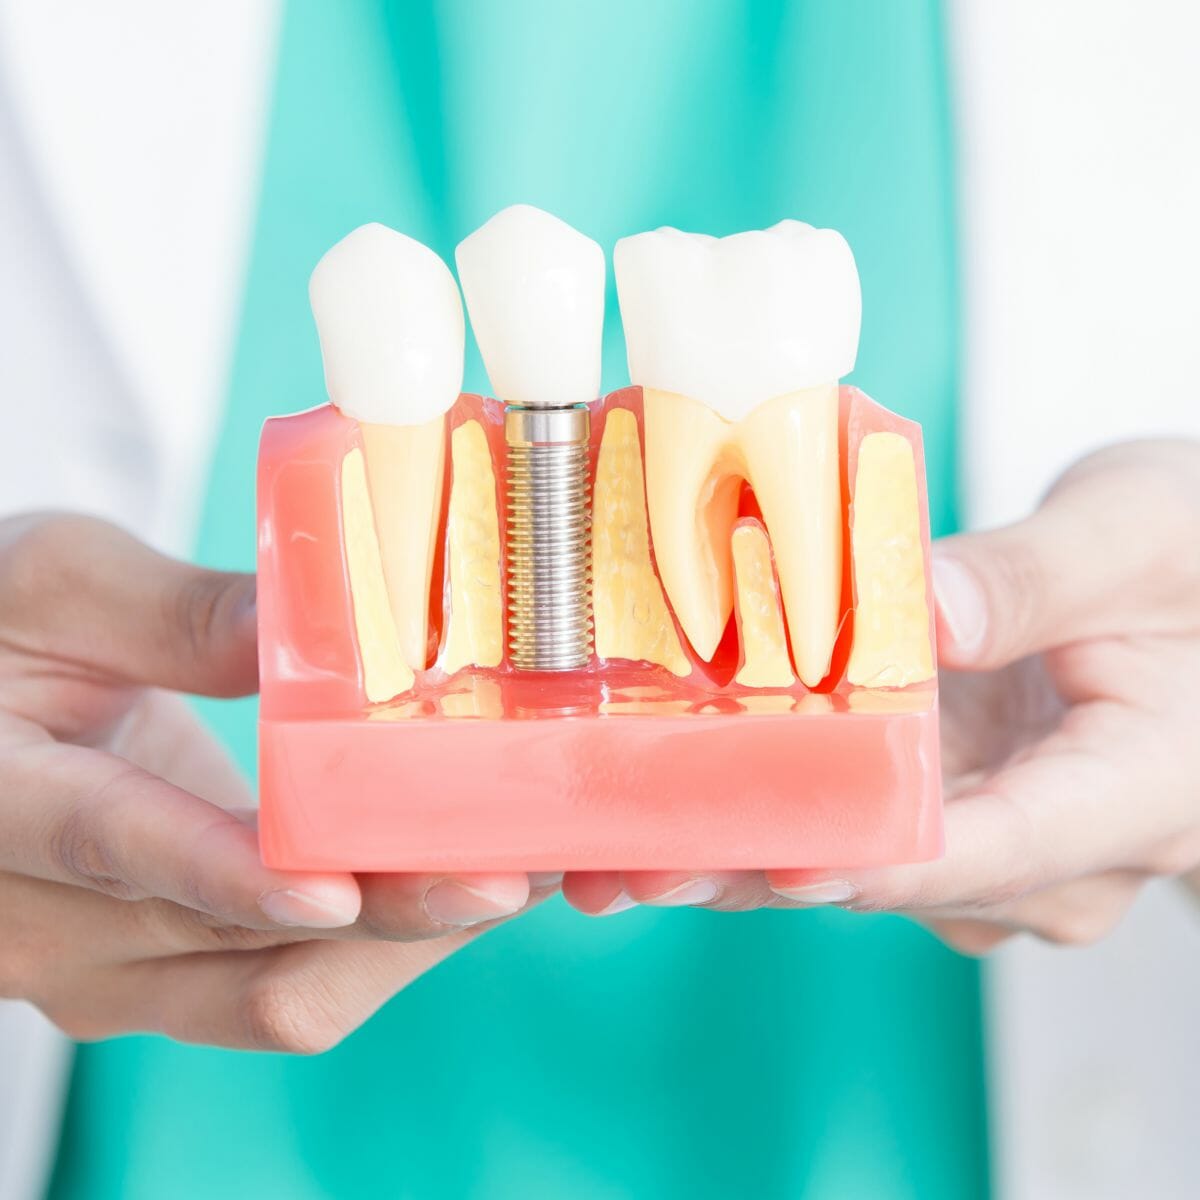 Implant dentaire : comment l’installer dans la bouche ?